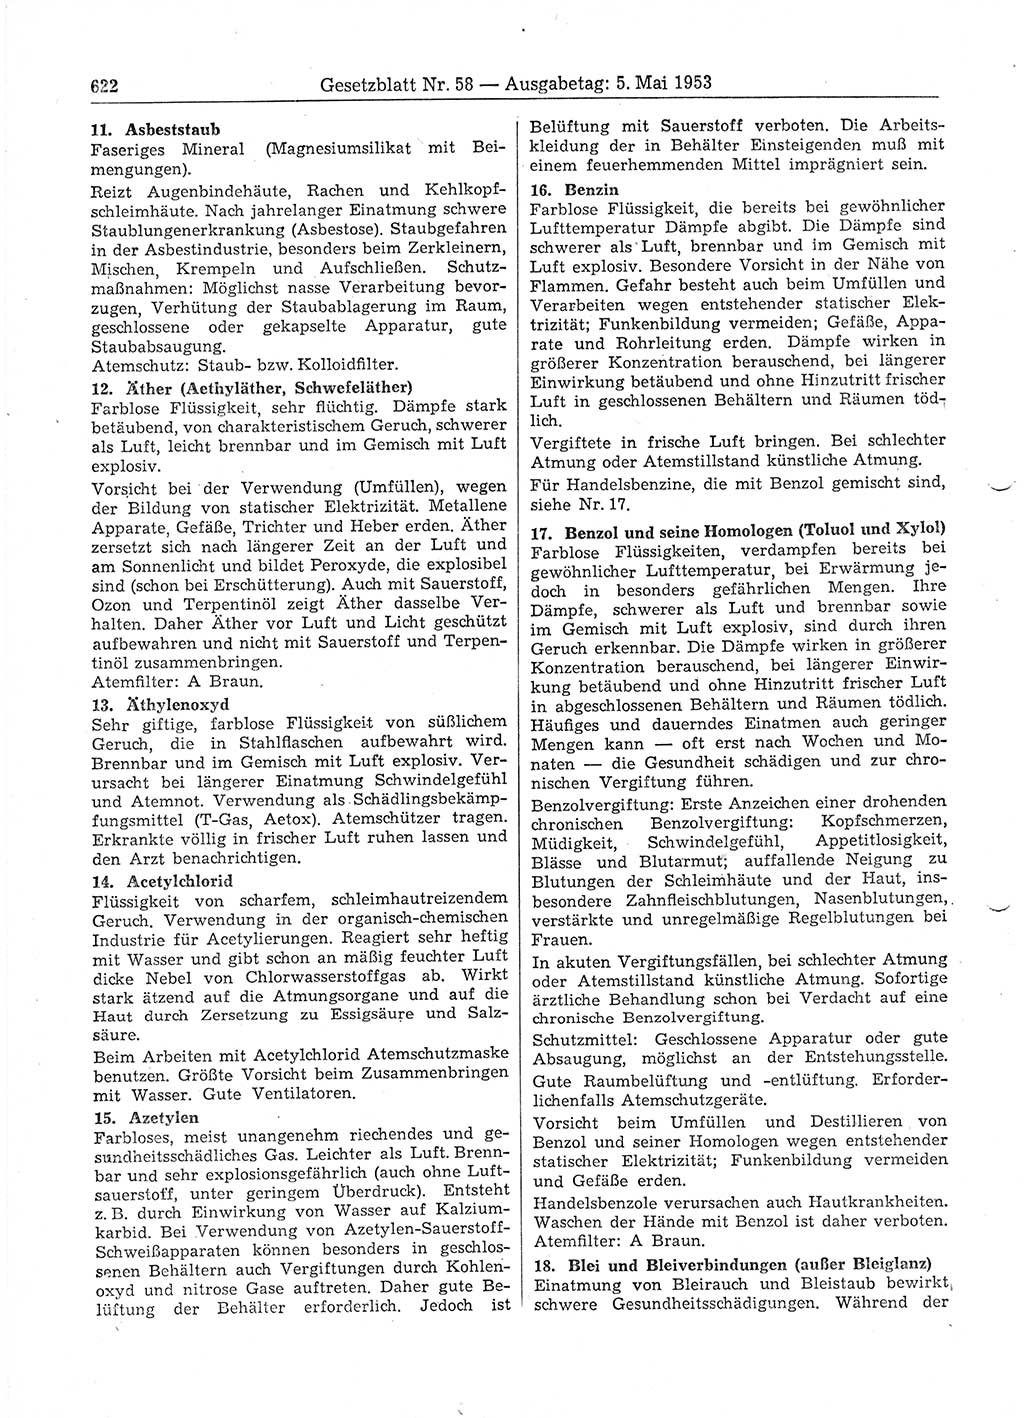 Gesetzblatt (GBl.) der Deutschen Demokratischen Republik (DDR) 1953, Seite 622 (GBl. DDR 1953, S. 622)